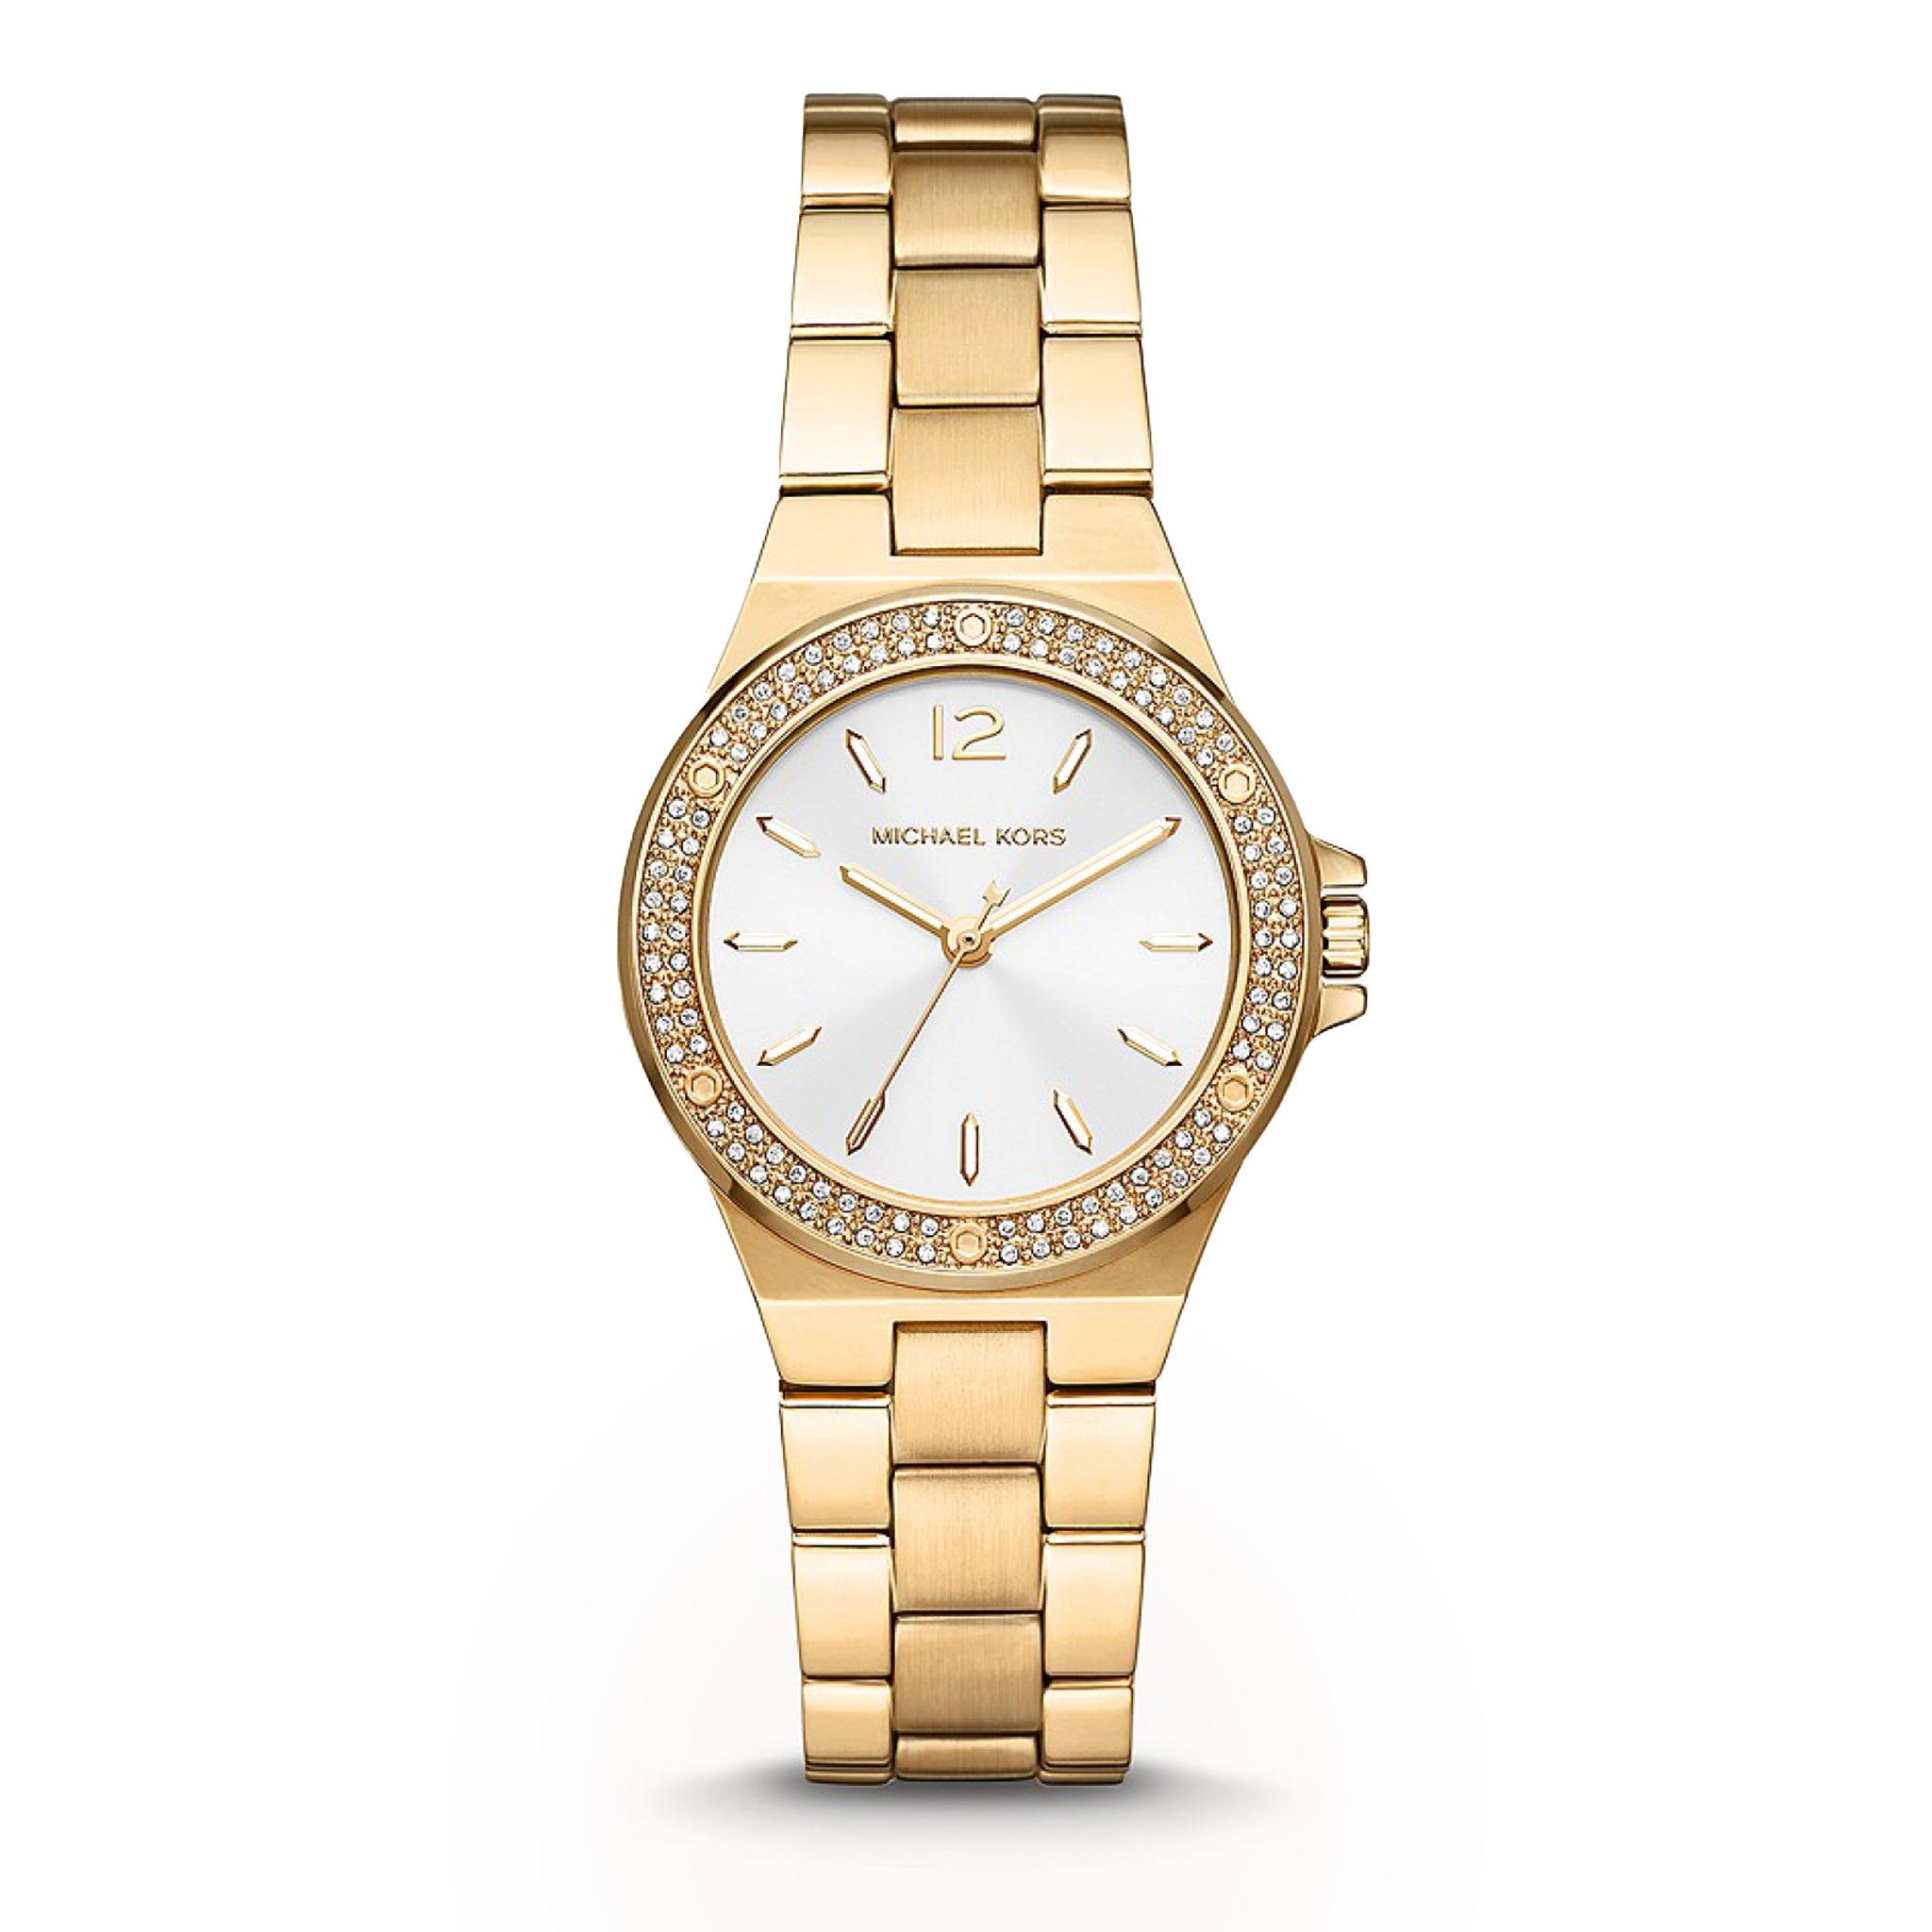 ساعة مايكل كورس ميني لينوكس بثلاث عقارب ذهبية اللون من الستانلس ستيل للنساء Michael Kors Mini-Lennox Three-Hand Gold-Tone Stainless Steel Watch - Mk7278